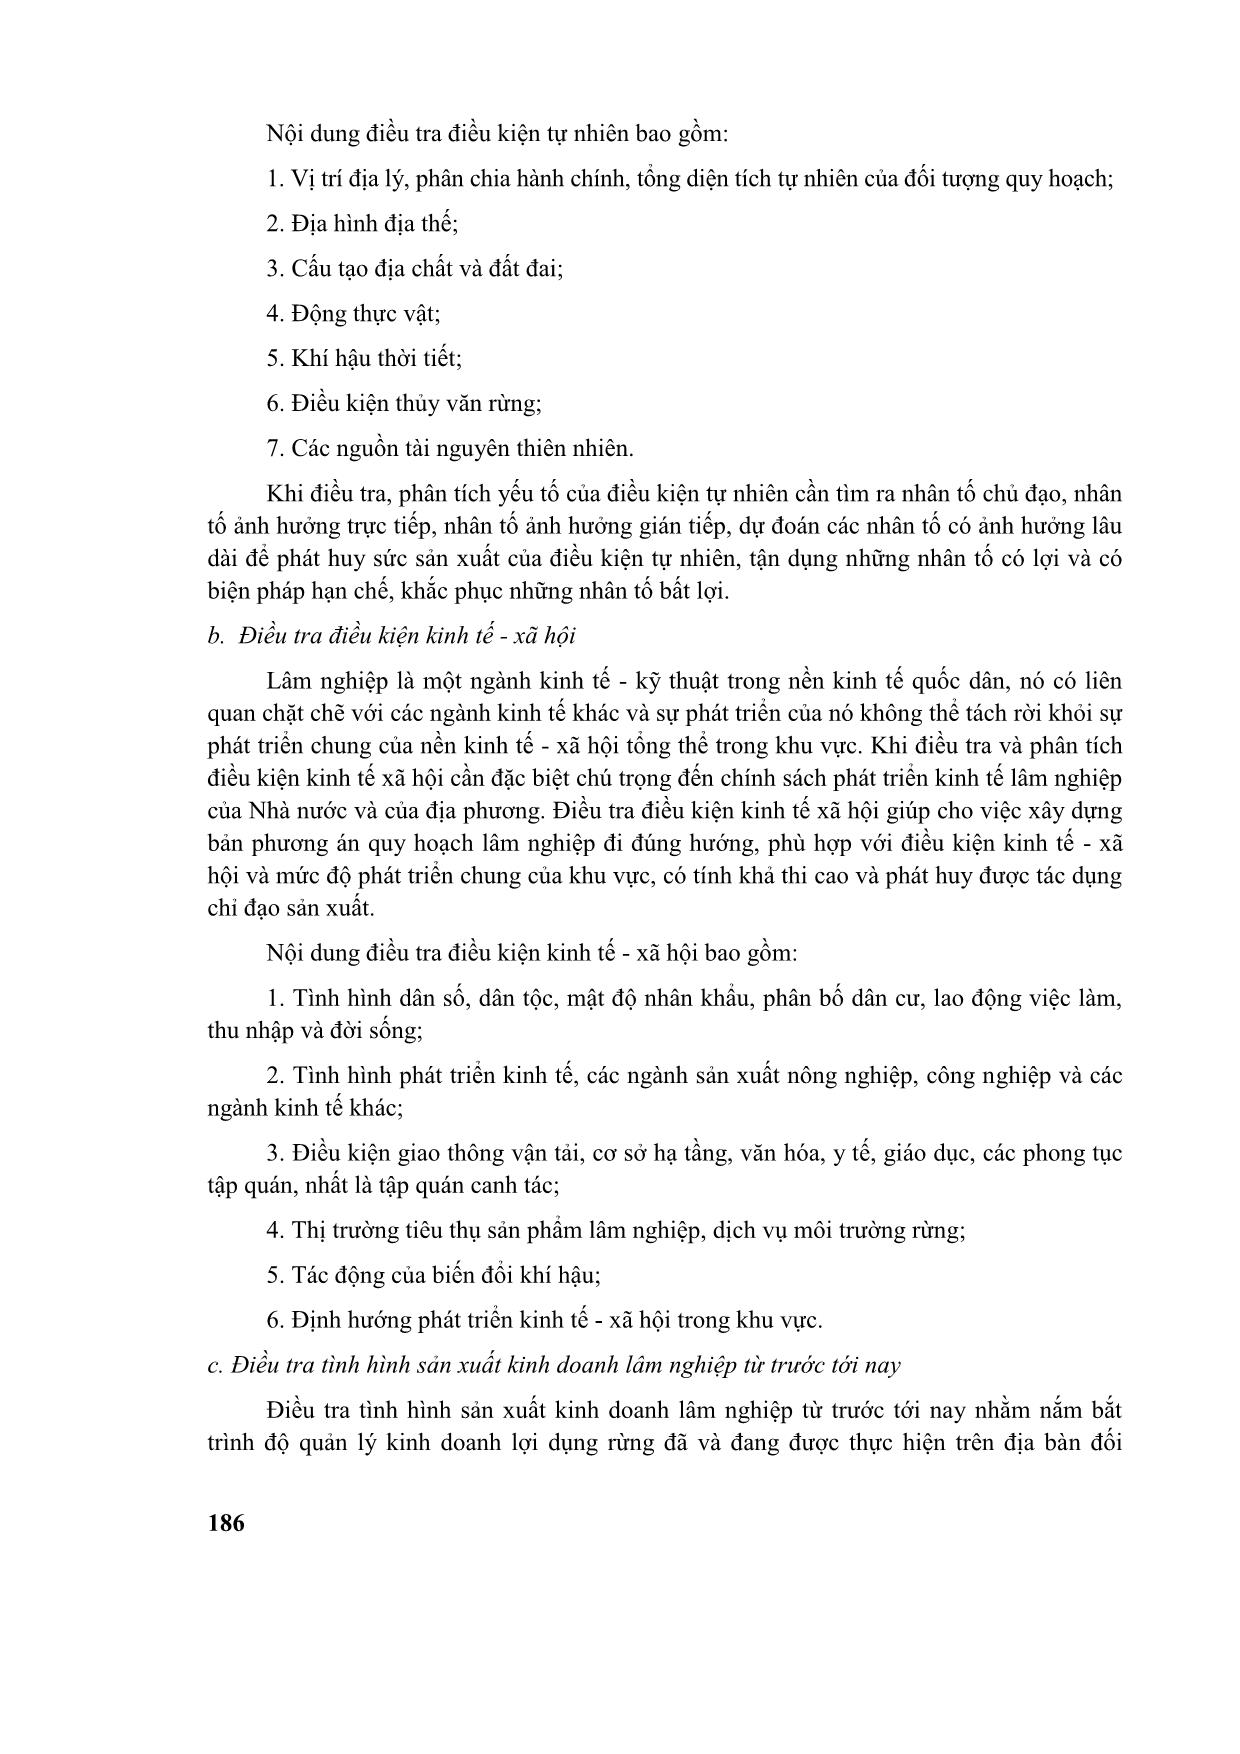 Giáo trình Quy hoạch lâm nghiệp (Phần 2) trang 4